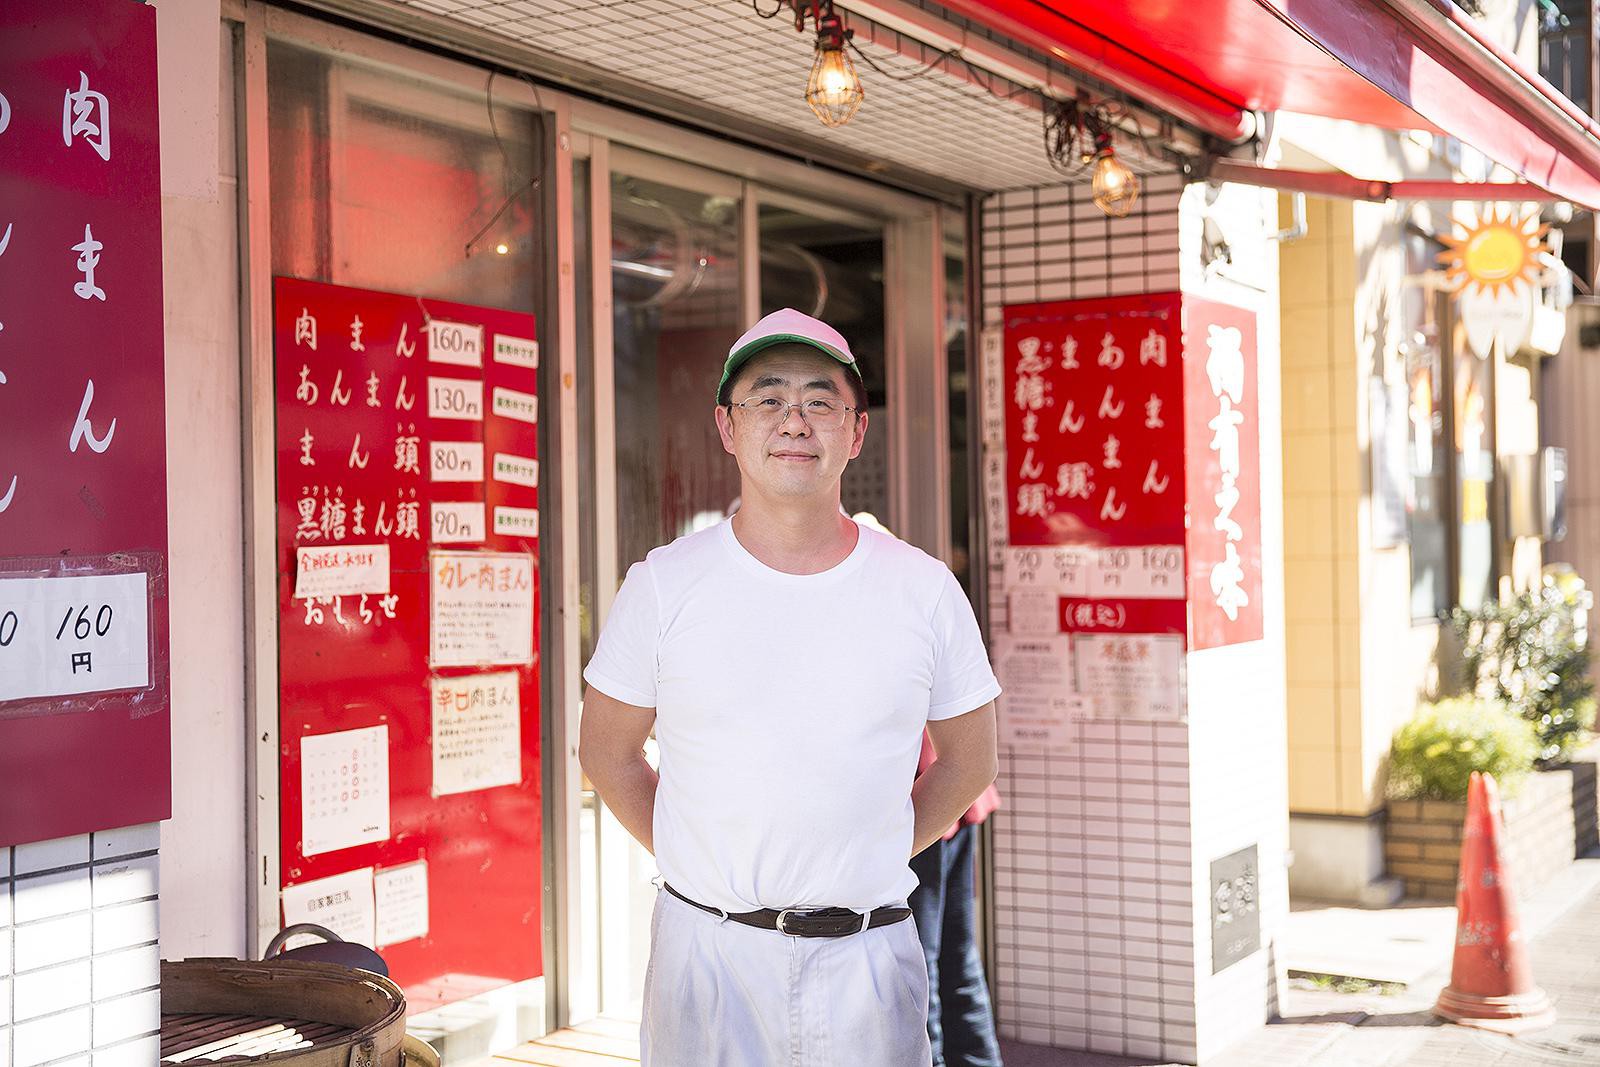 鹿港のオーナー、小林貞郎さん。台湾で肉まんの魅力を知り、日本で広めるべく修業した経歴の持ち主です。